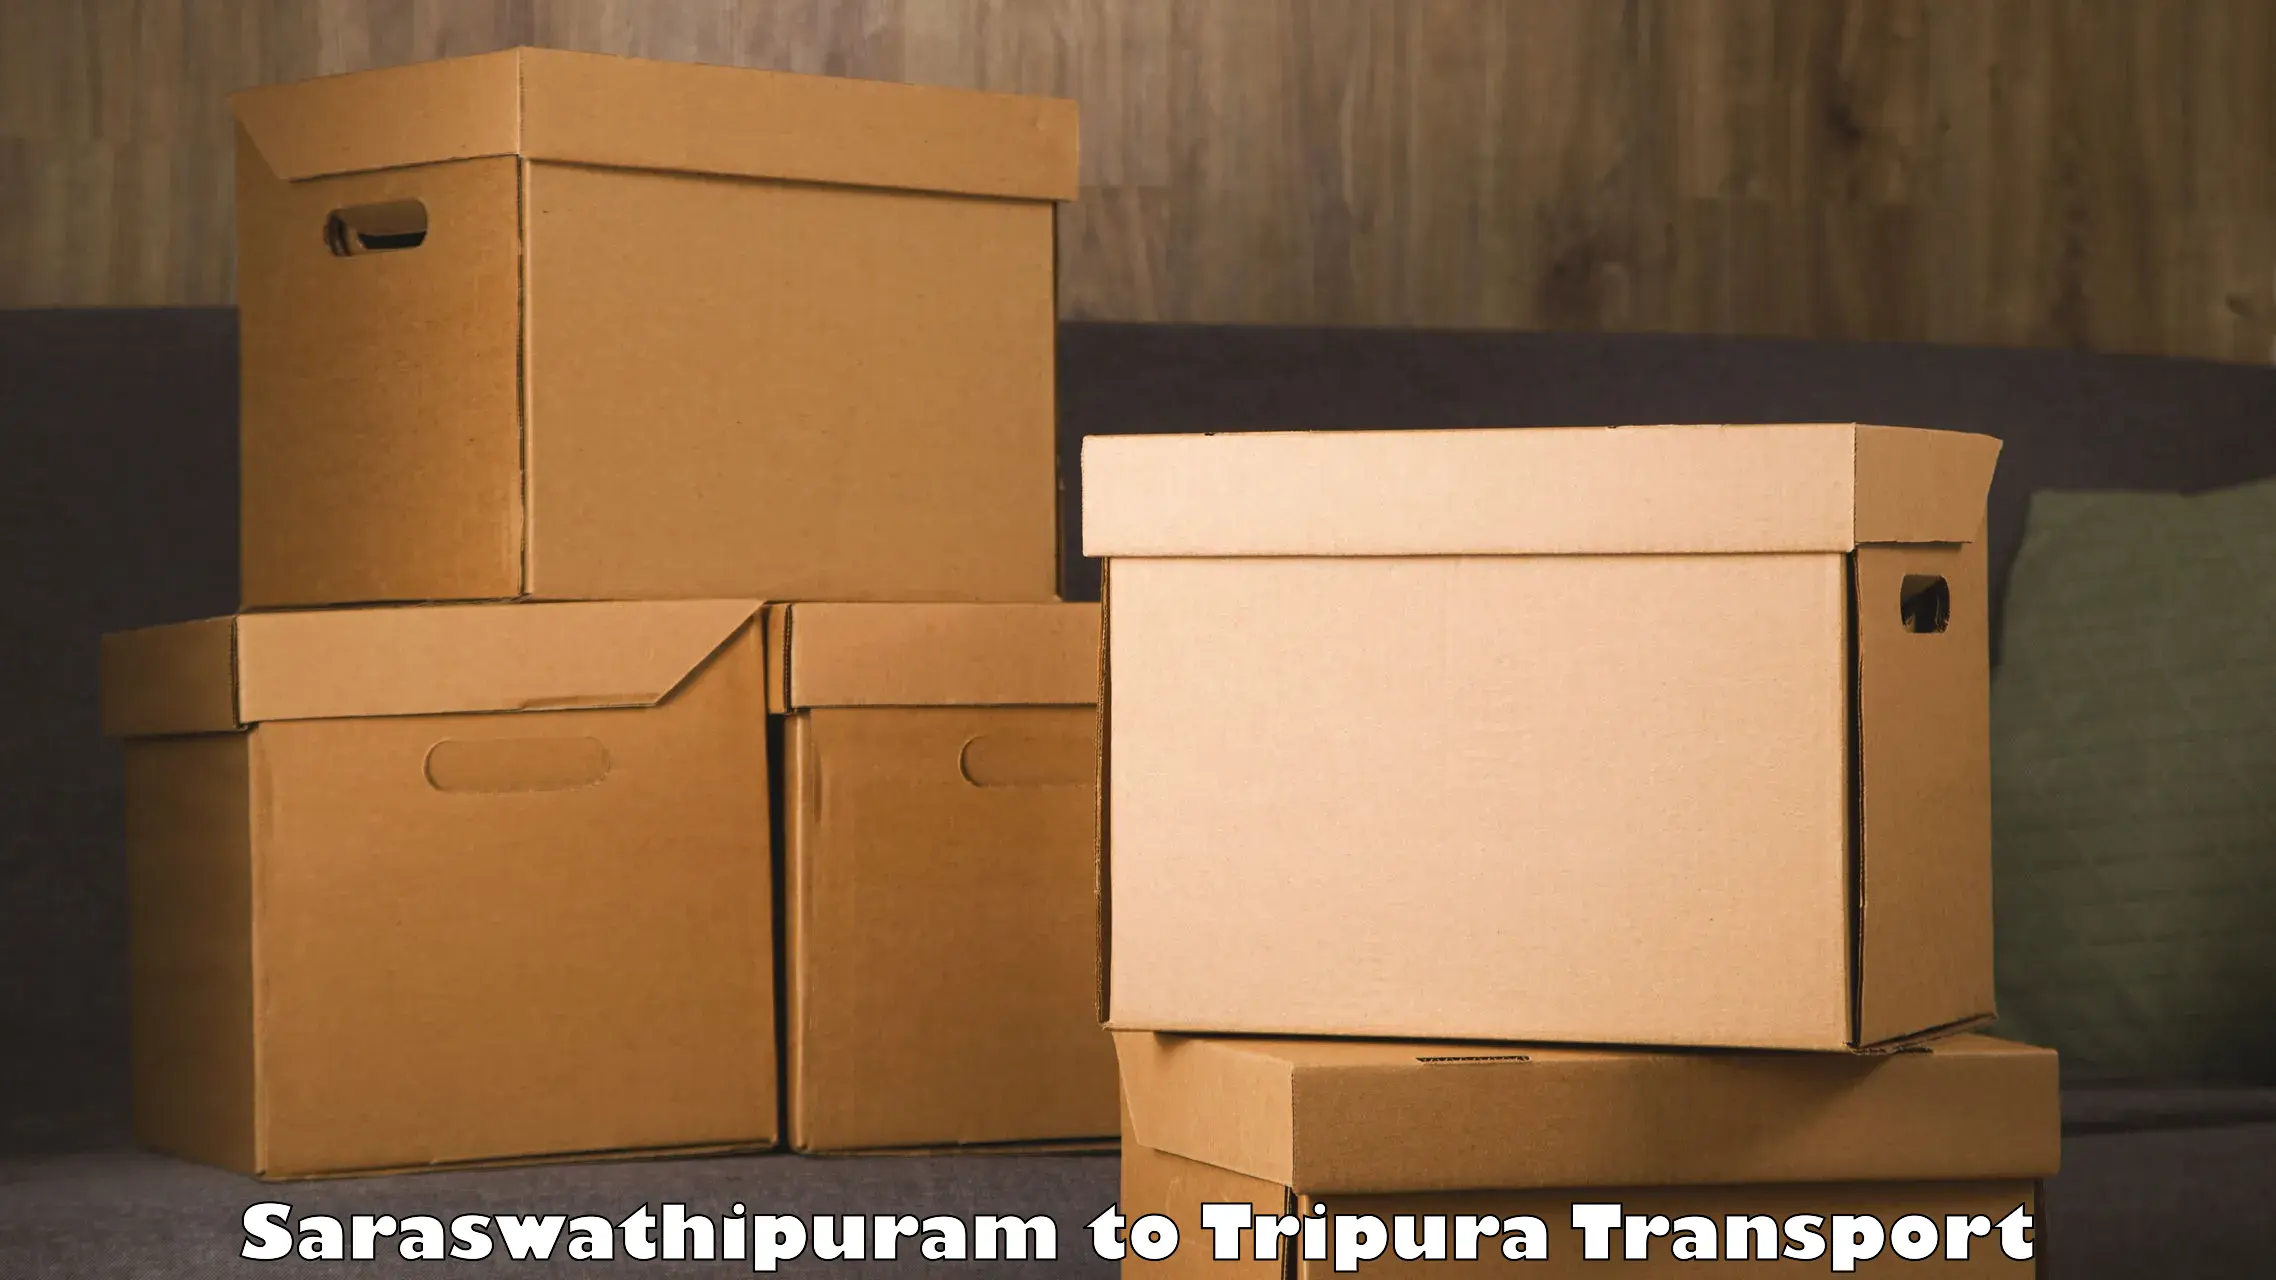 Online transport service Saraswathipuram to Tripura